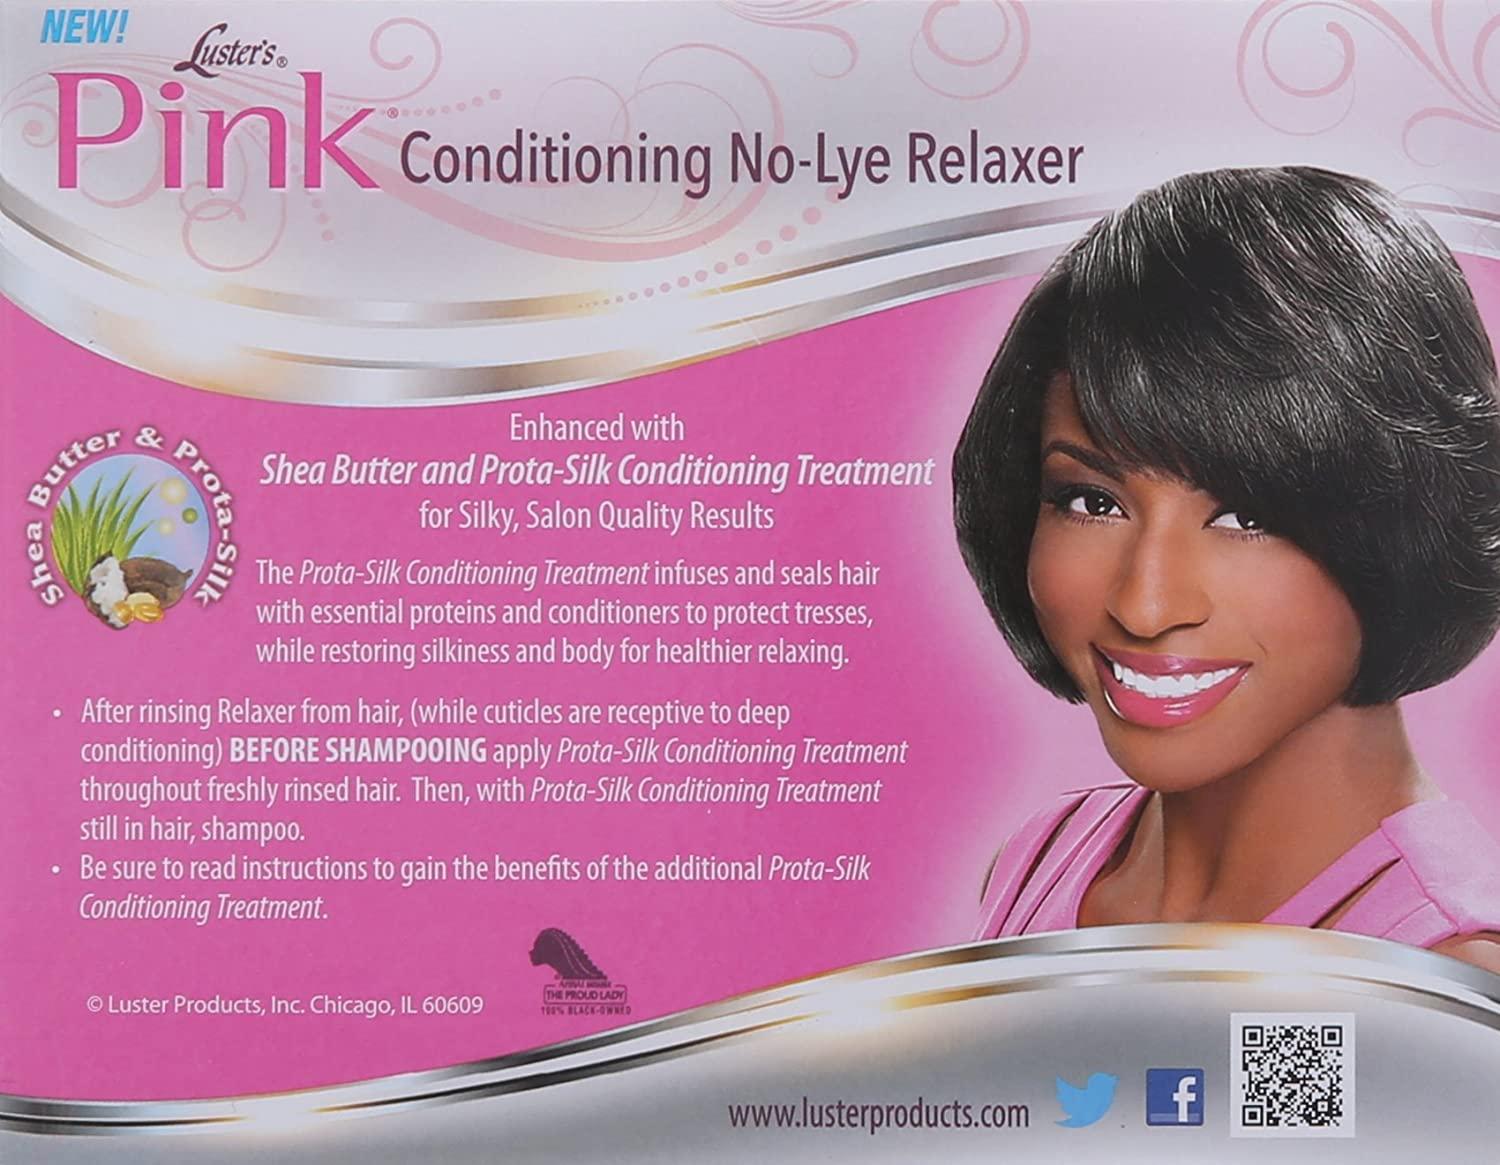 Luster's Pink No-lye Conditioning Relaxer Regular 1 kit